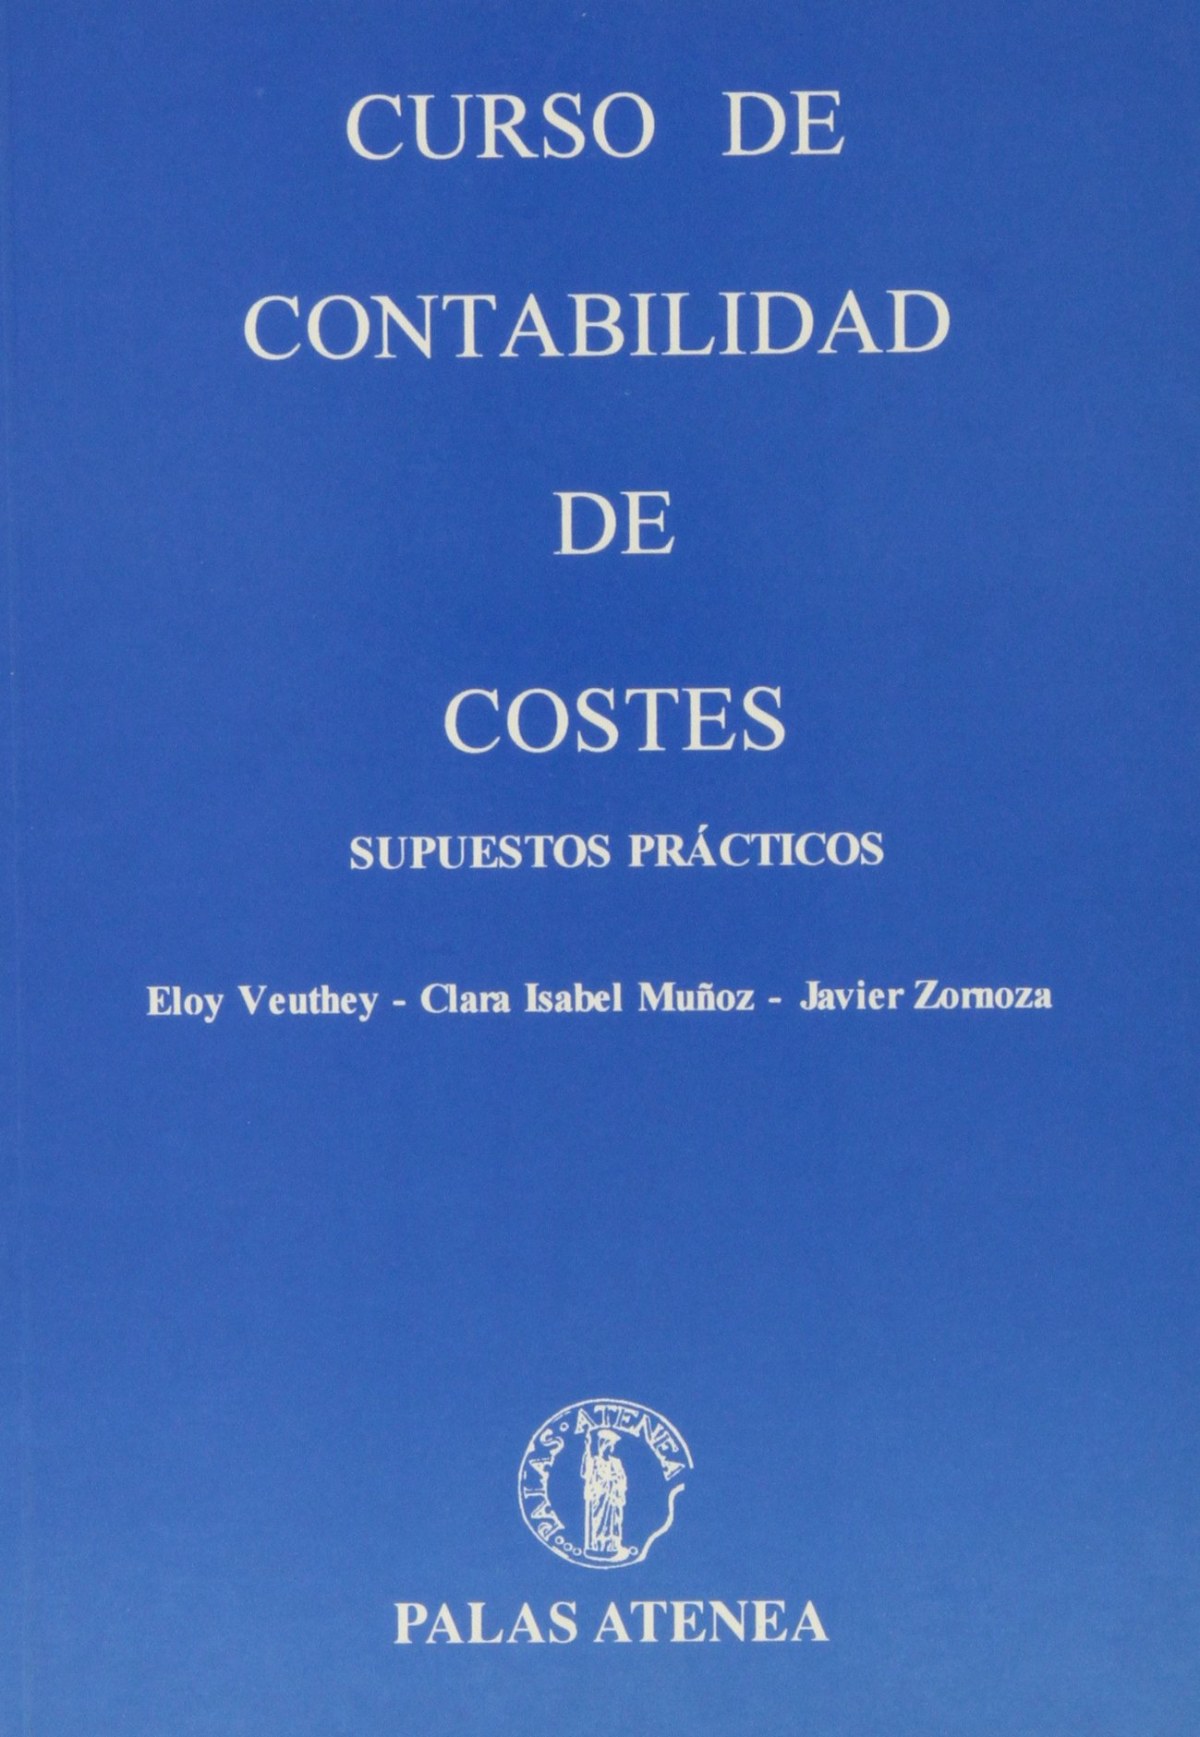 Curso de contabilidad de costes, supuestos practicos - Veuthey/Muñoz/Zornoza